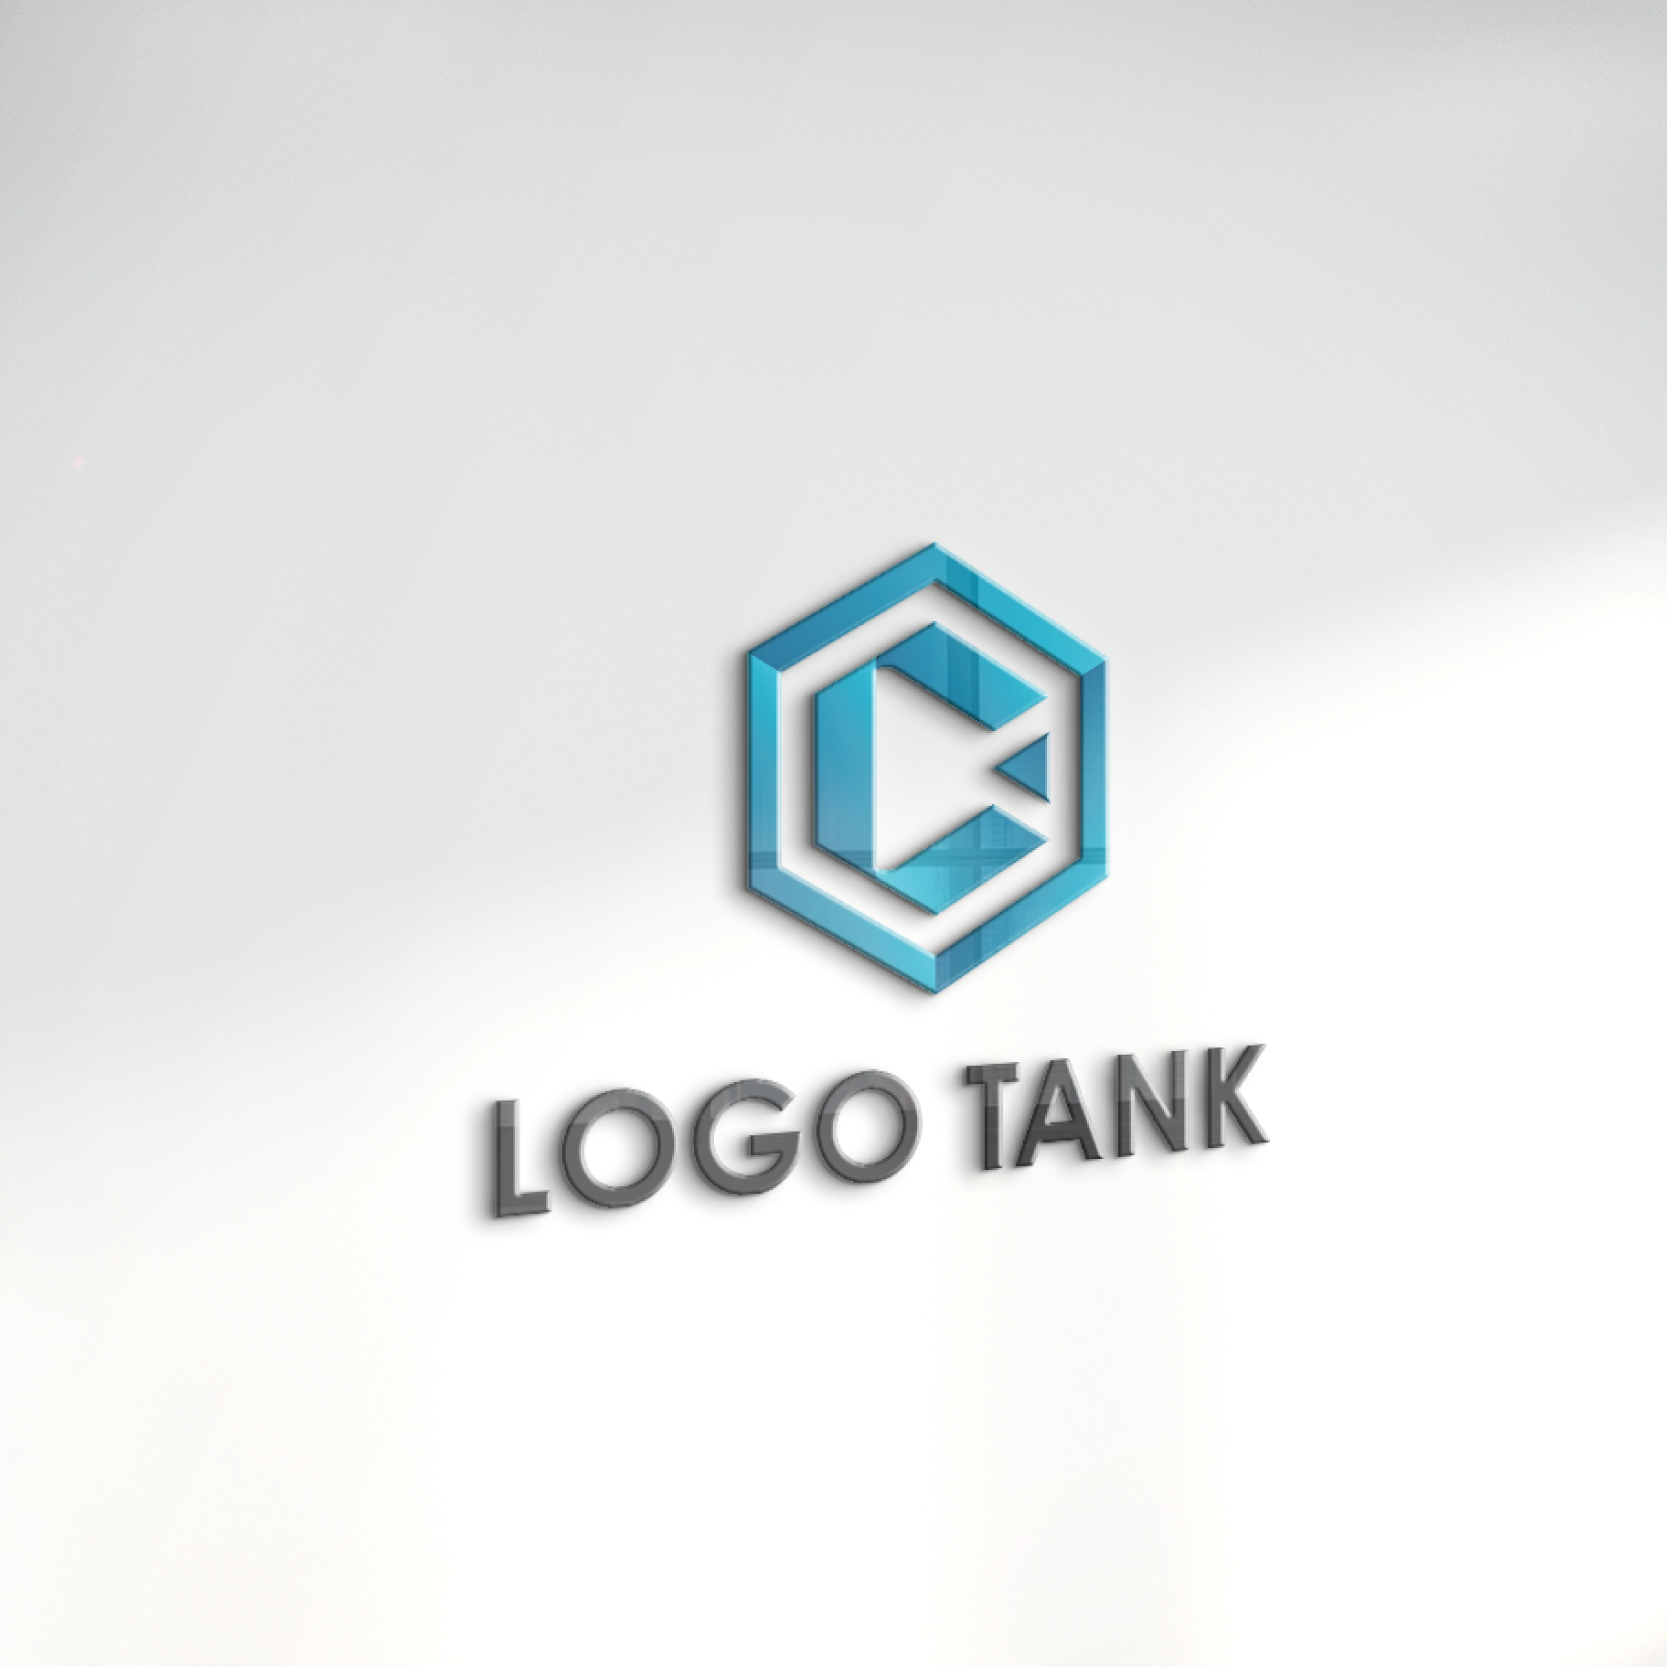 ロゴでカルプ看板を作成したイメージ | 「C」と「多角的・指針」をモチーフにしたロゴ